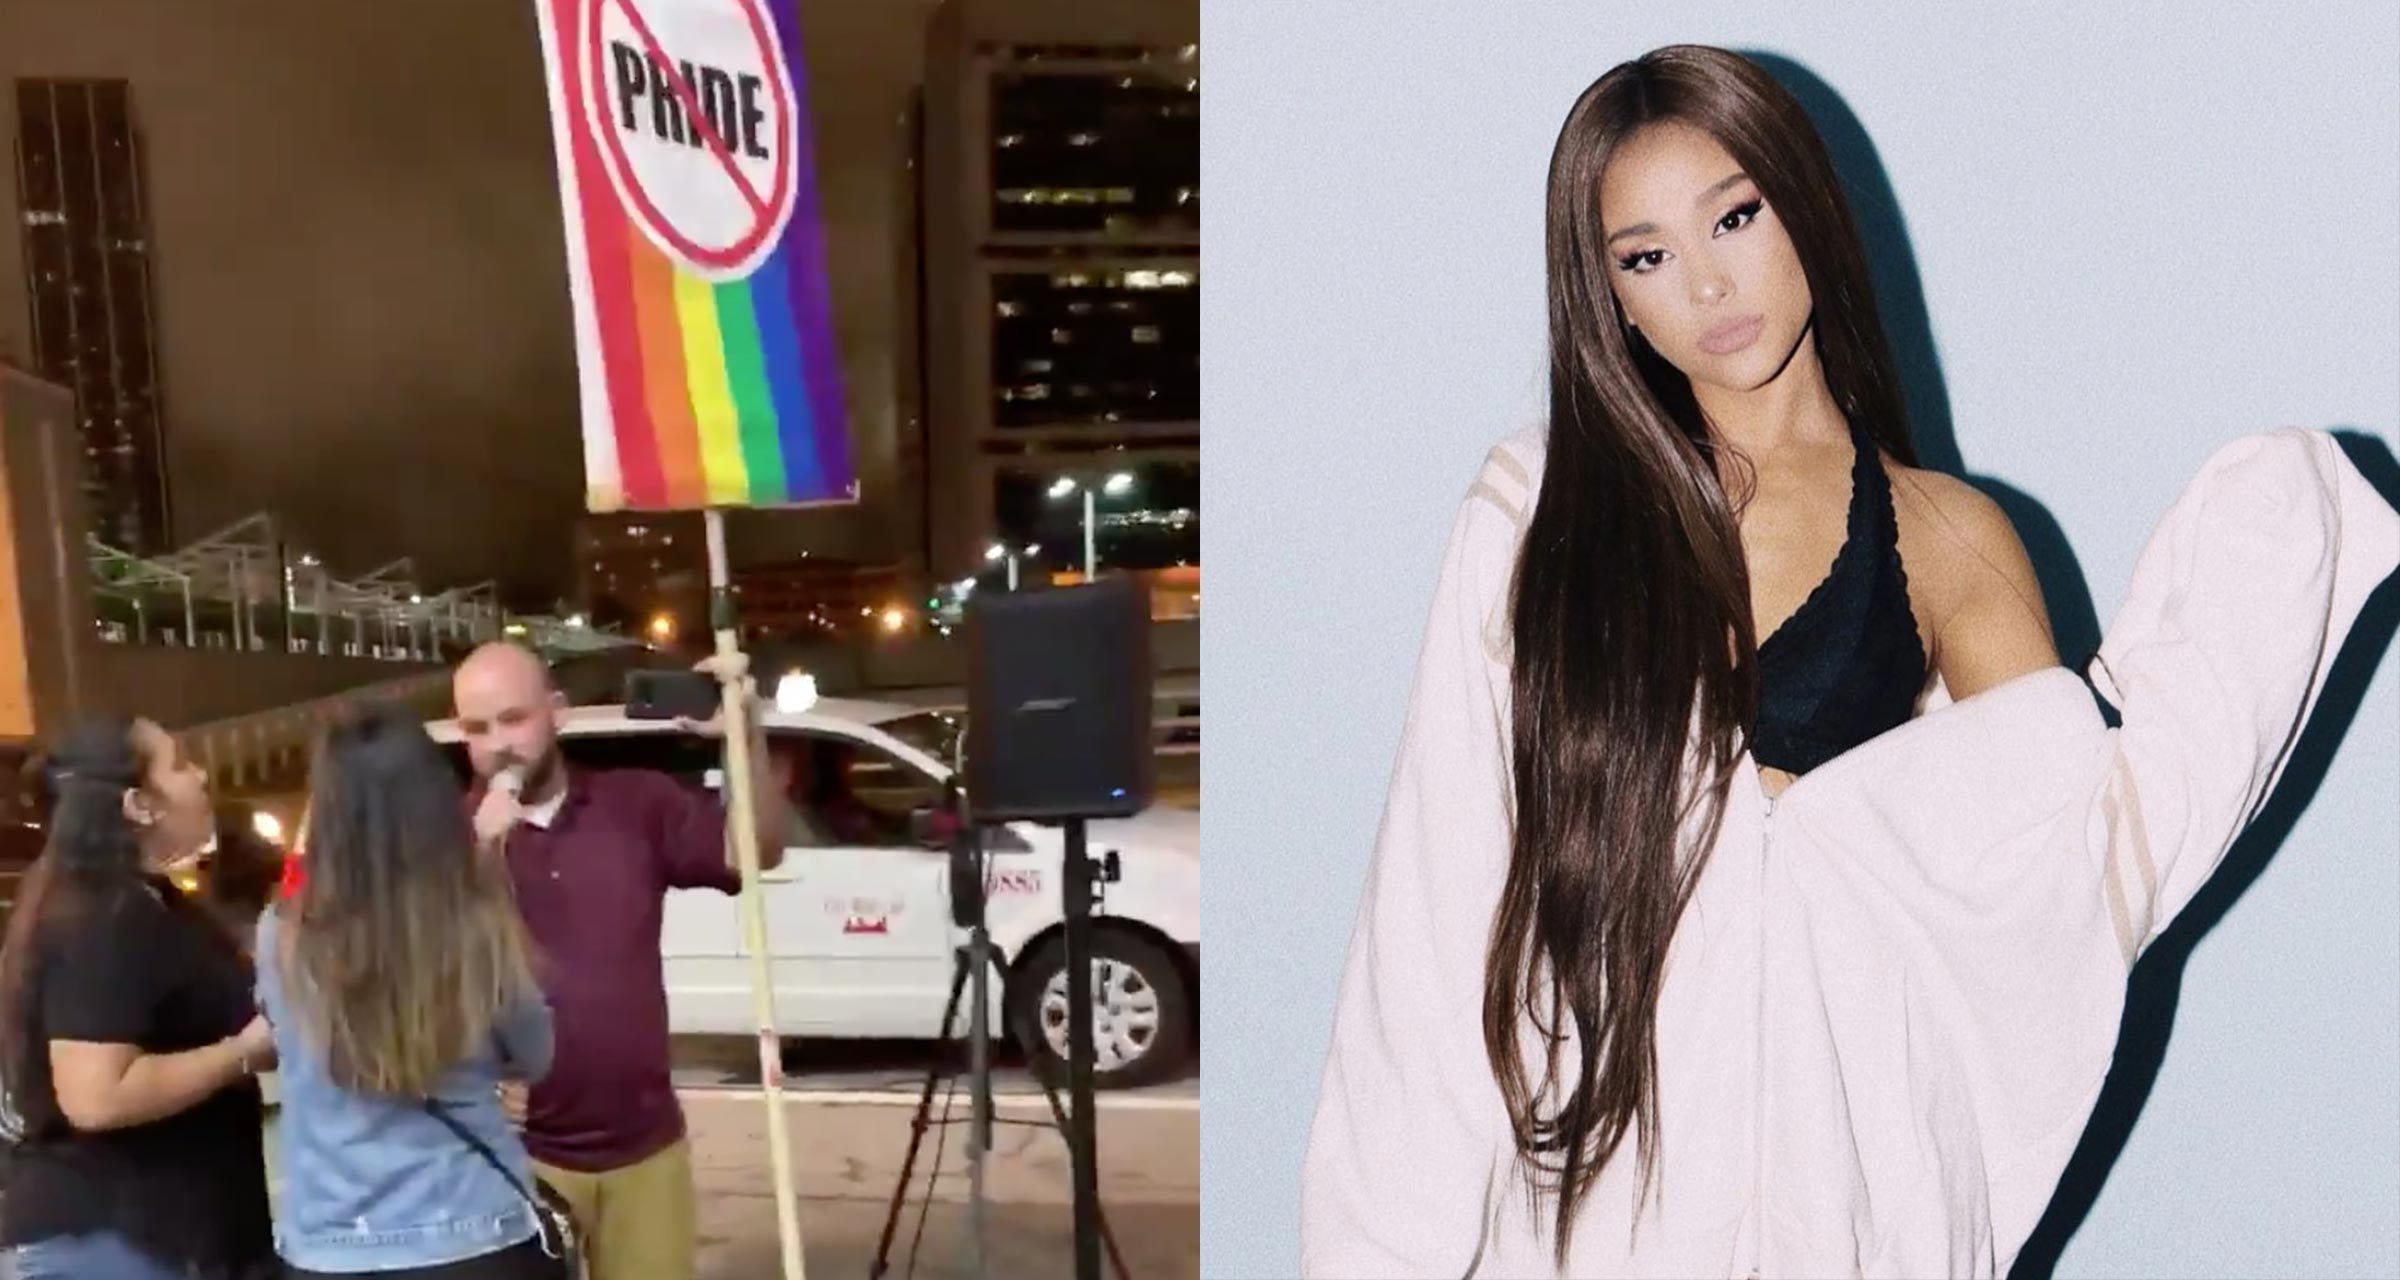 Homem faz protesto anti-LGBT em show de Ariana Grande e cantora responde